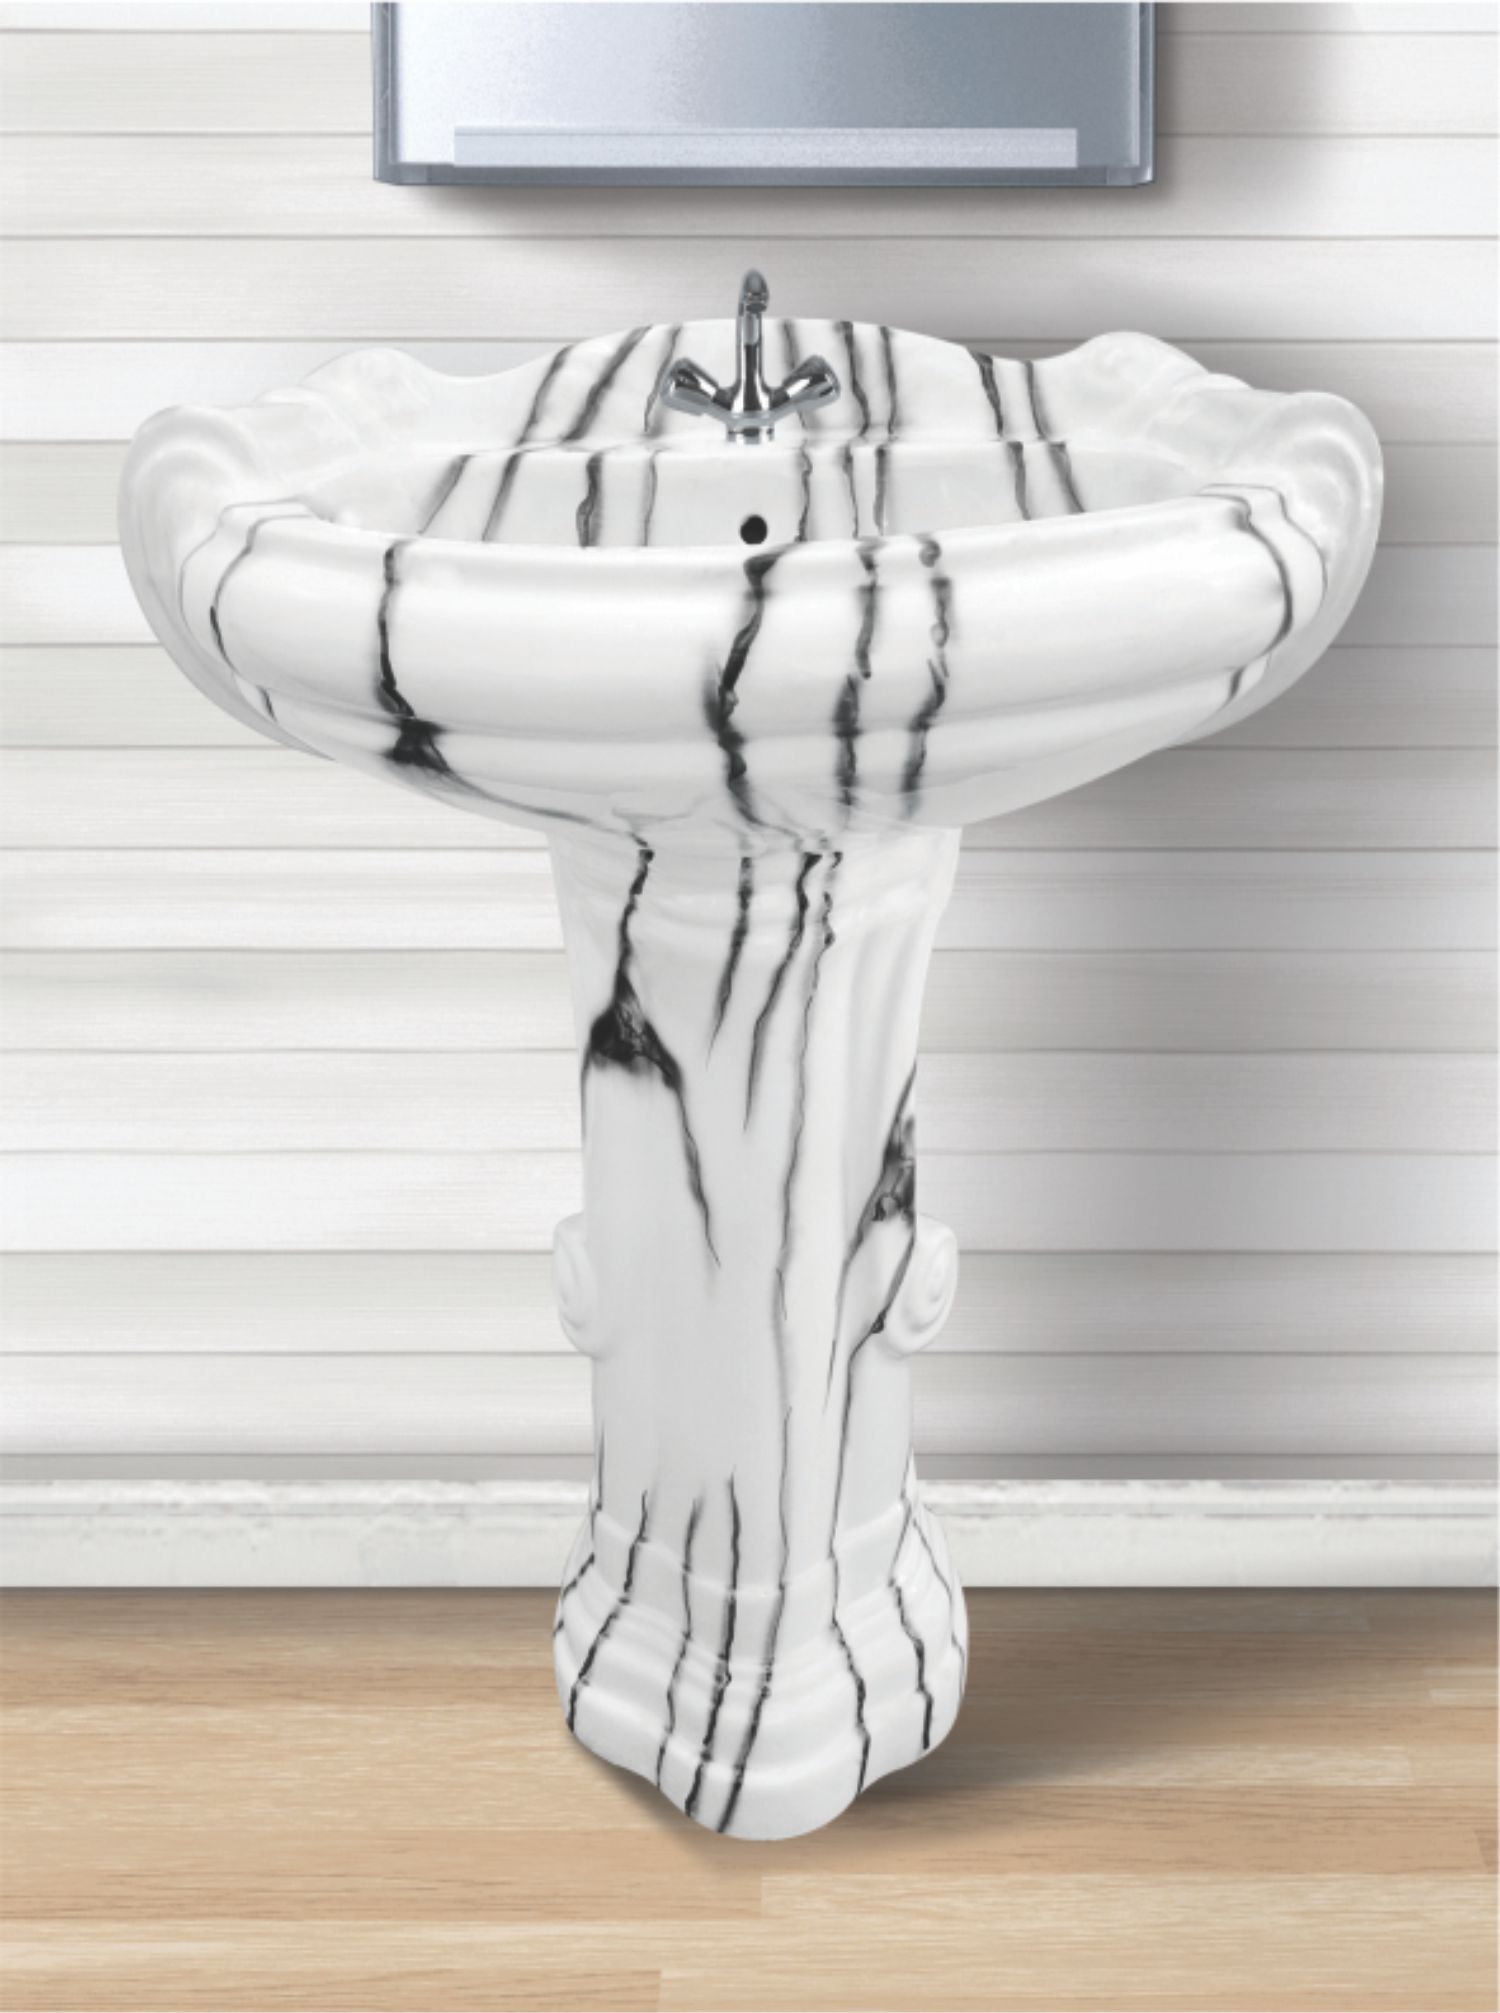 Vitrosa Pedestal Ceramic Wash Basin Set Manufacturer